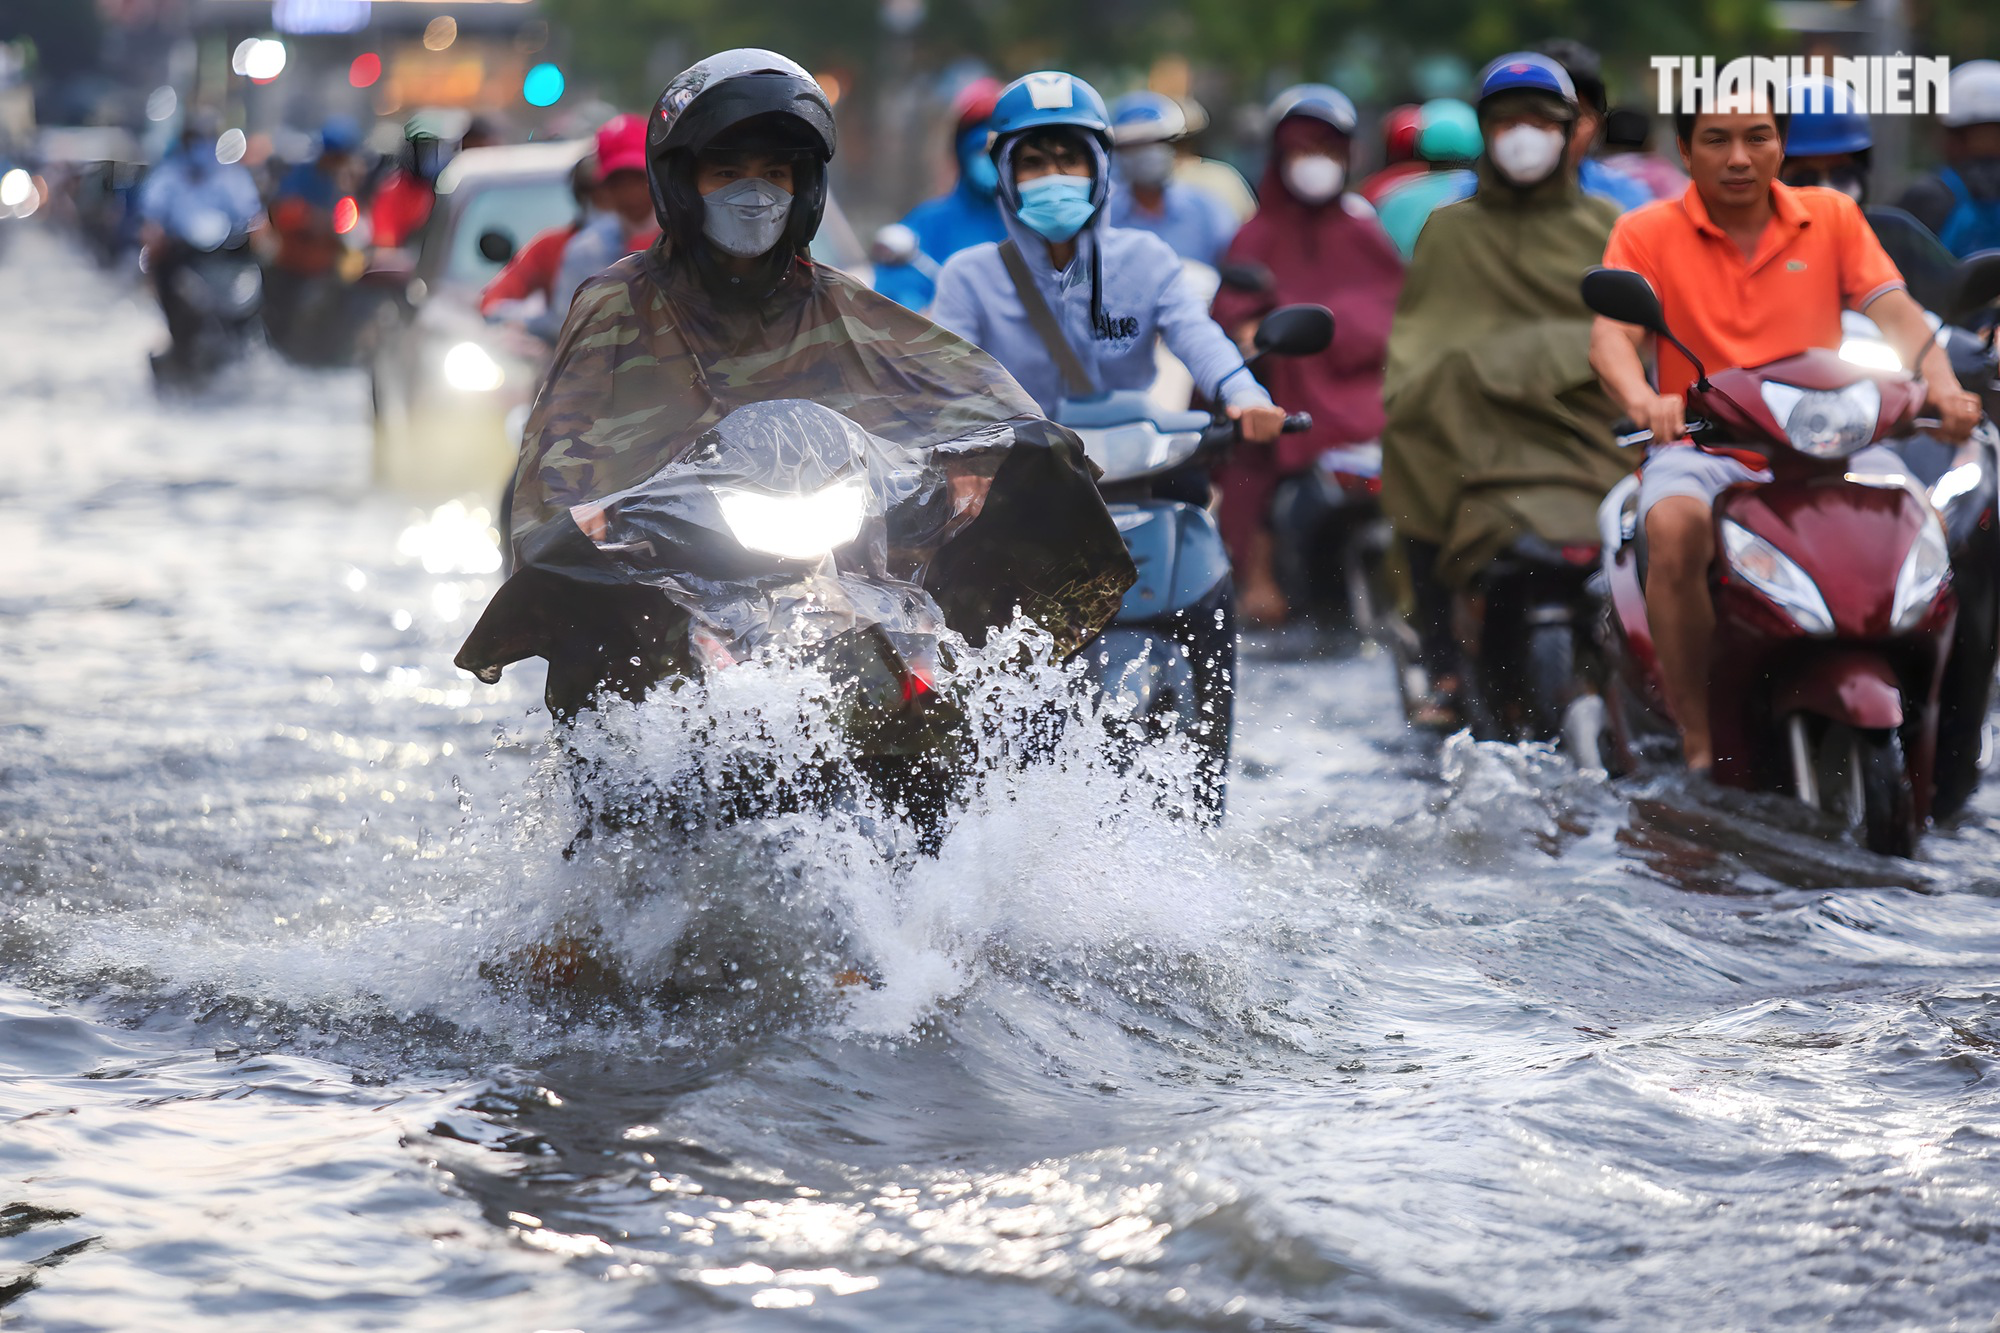 Đường TP.HCM ngập lênh láng sau mưa, người dân vất vả lội nước về nhà - Ảnh 2.